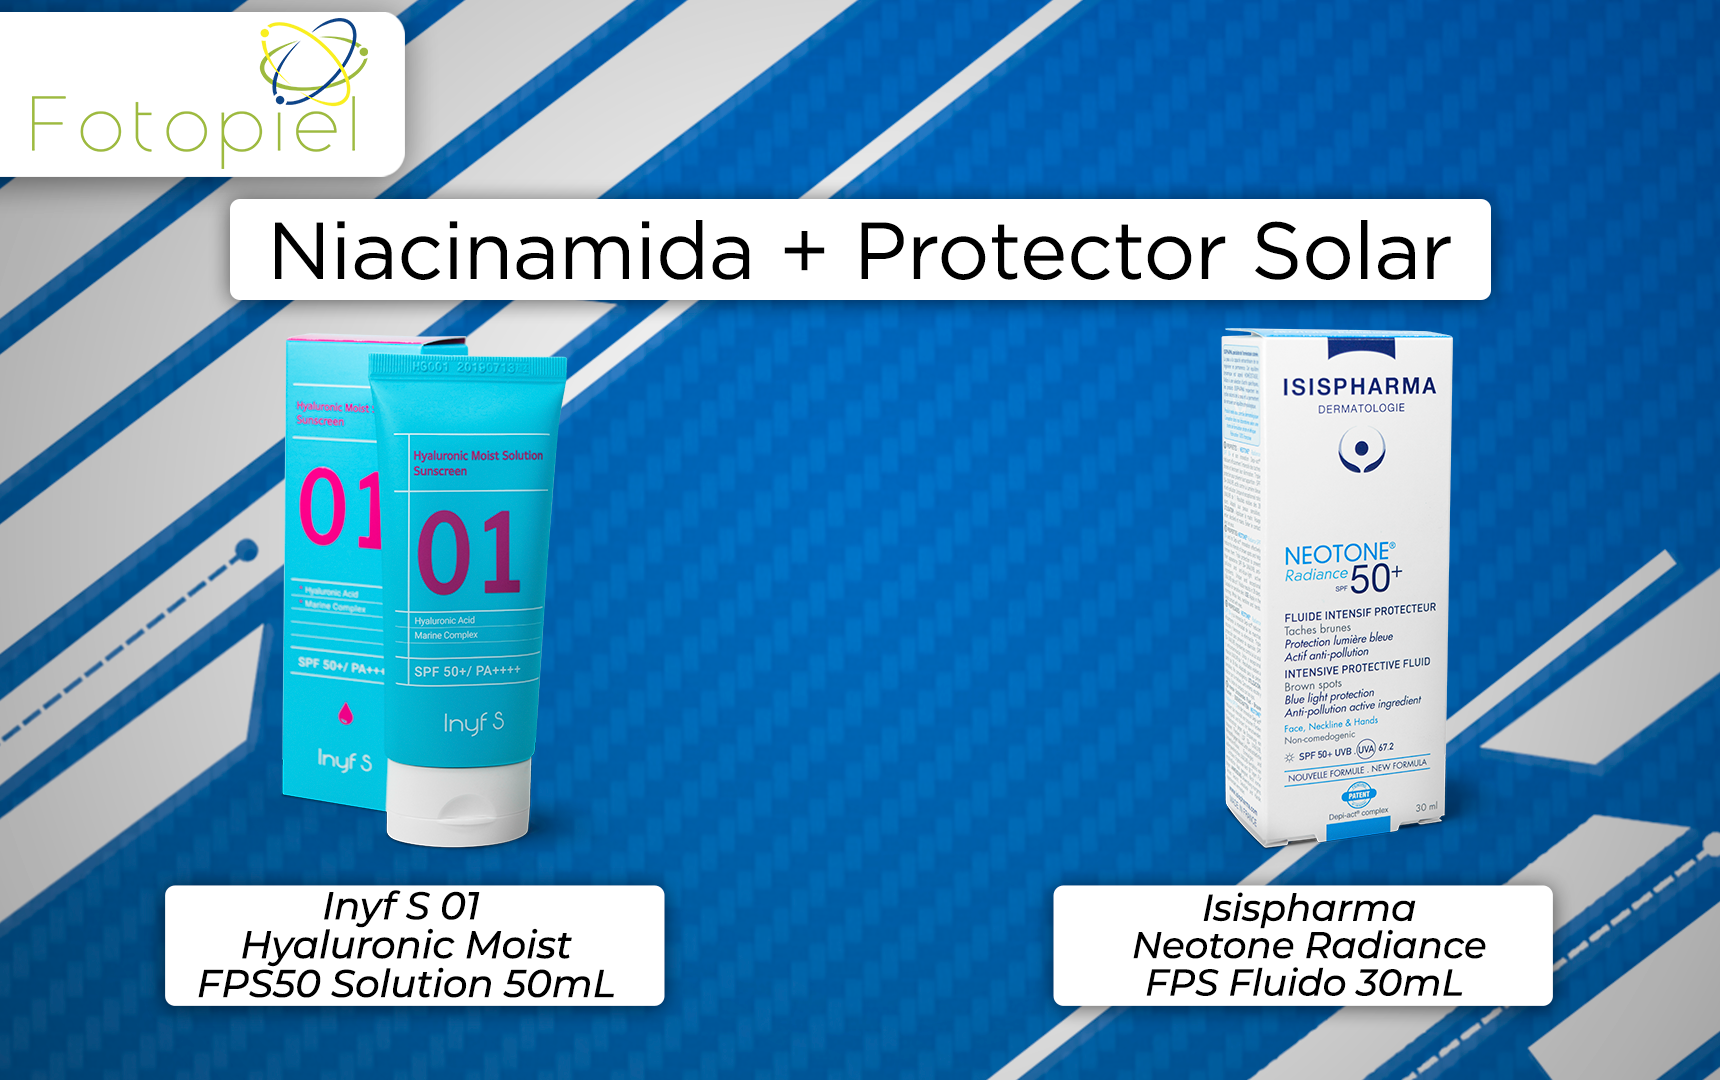 productos que contien niciacinamida & protector solar en su formulación y están disponibles en fotopiel